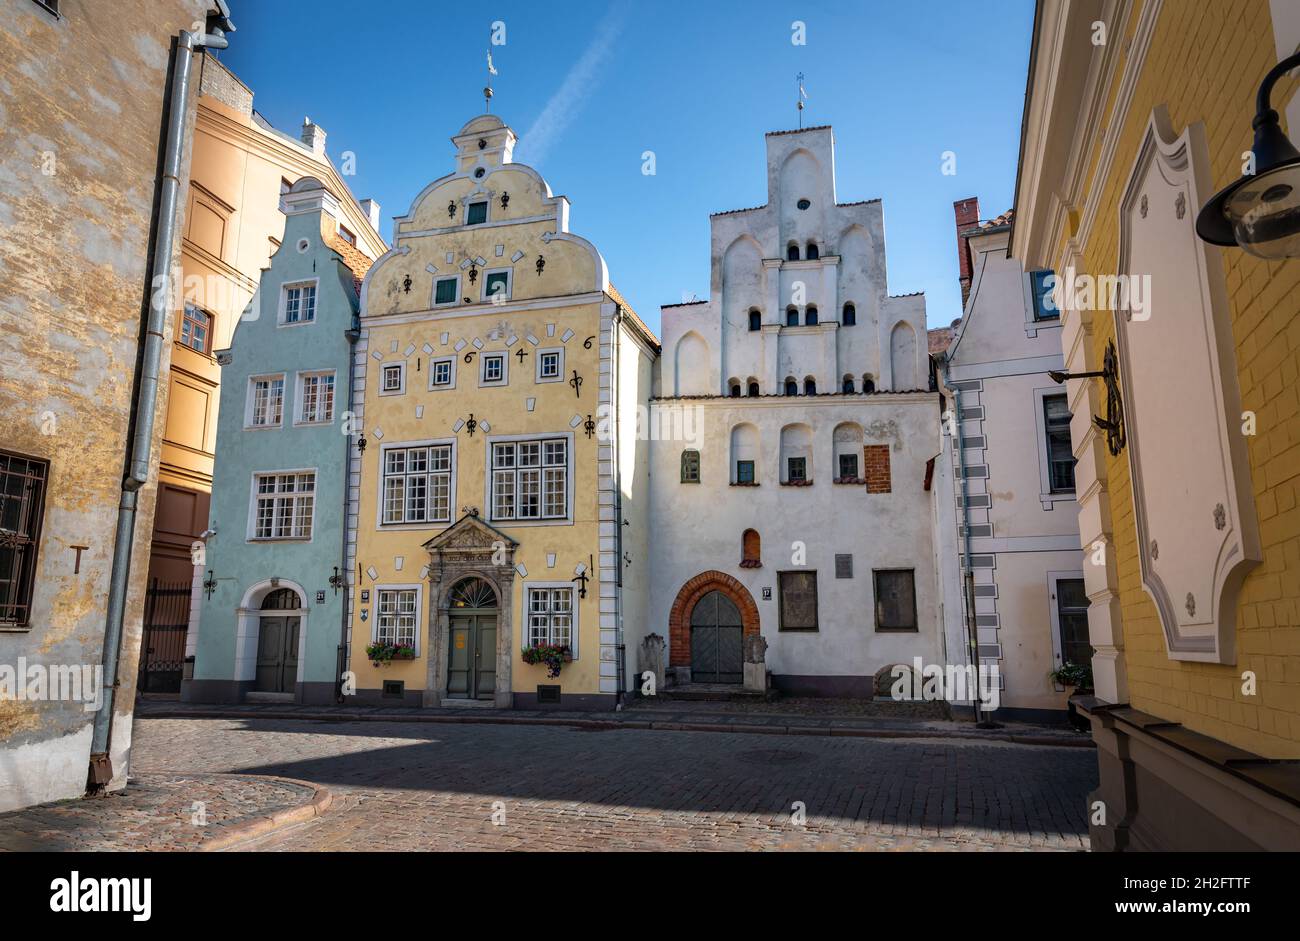 Drei Brüder - drei Wohnhäuser in Riga, die älteste aus dem späten 15. Jahrhundert - Riga, Lettland Stockfoto